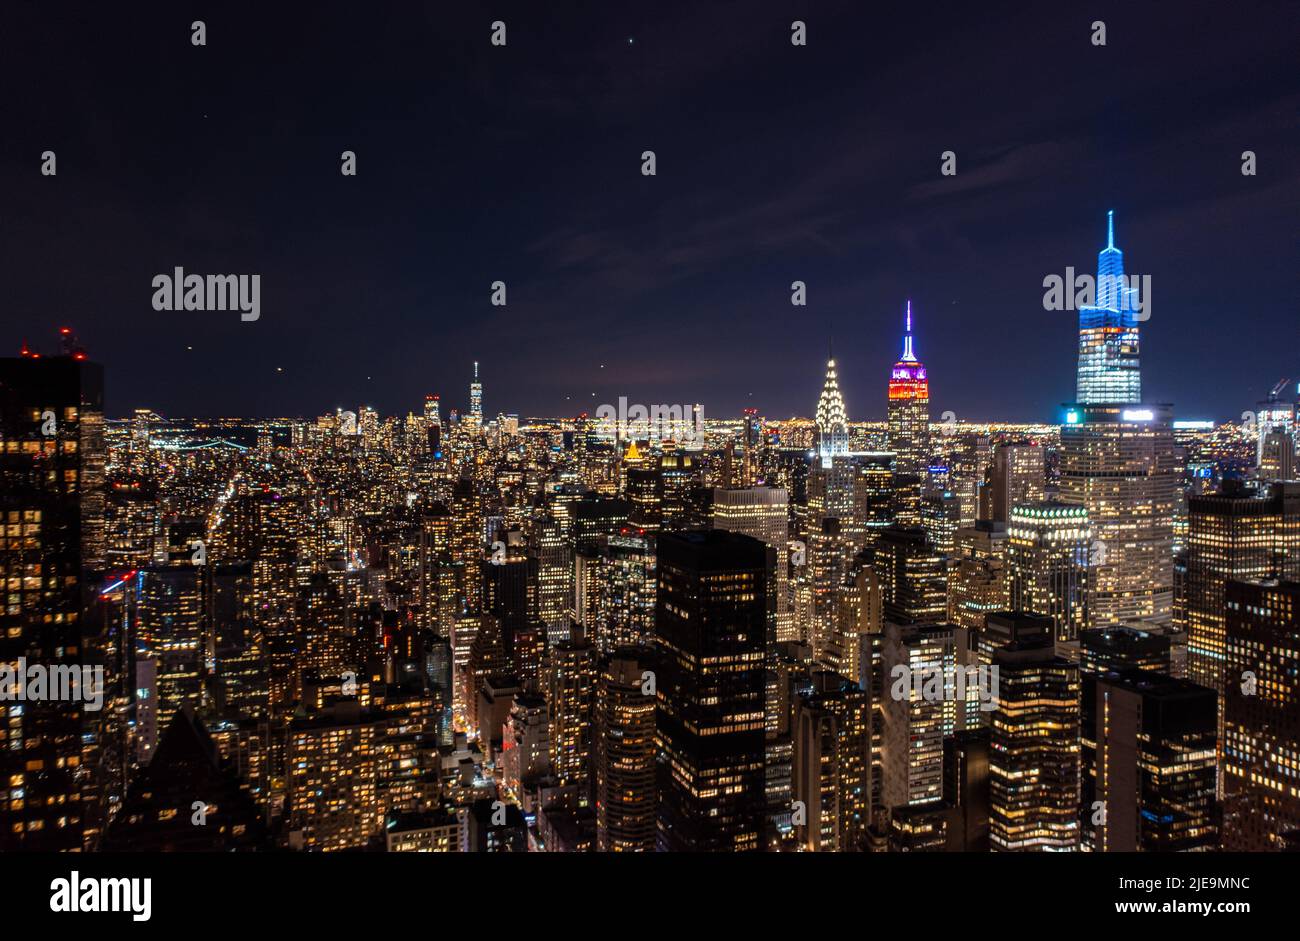 Bunte Spitzen auf berühmten Wolkenkratzern, Chrysler, Empire State und One Vanderbilt. Tolle nächtliche City-Szene. Manhattan, New York City, USA Stockfoto